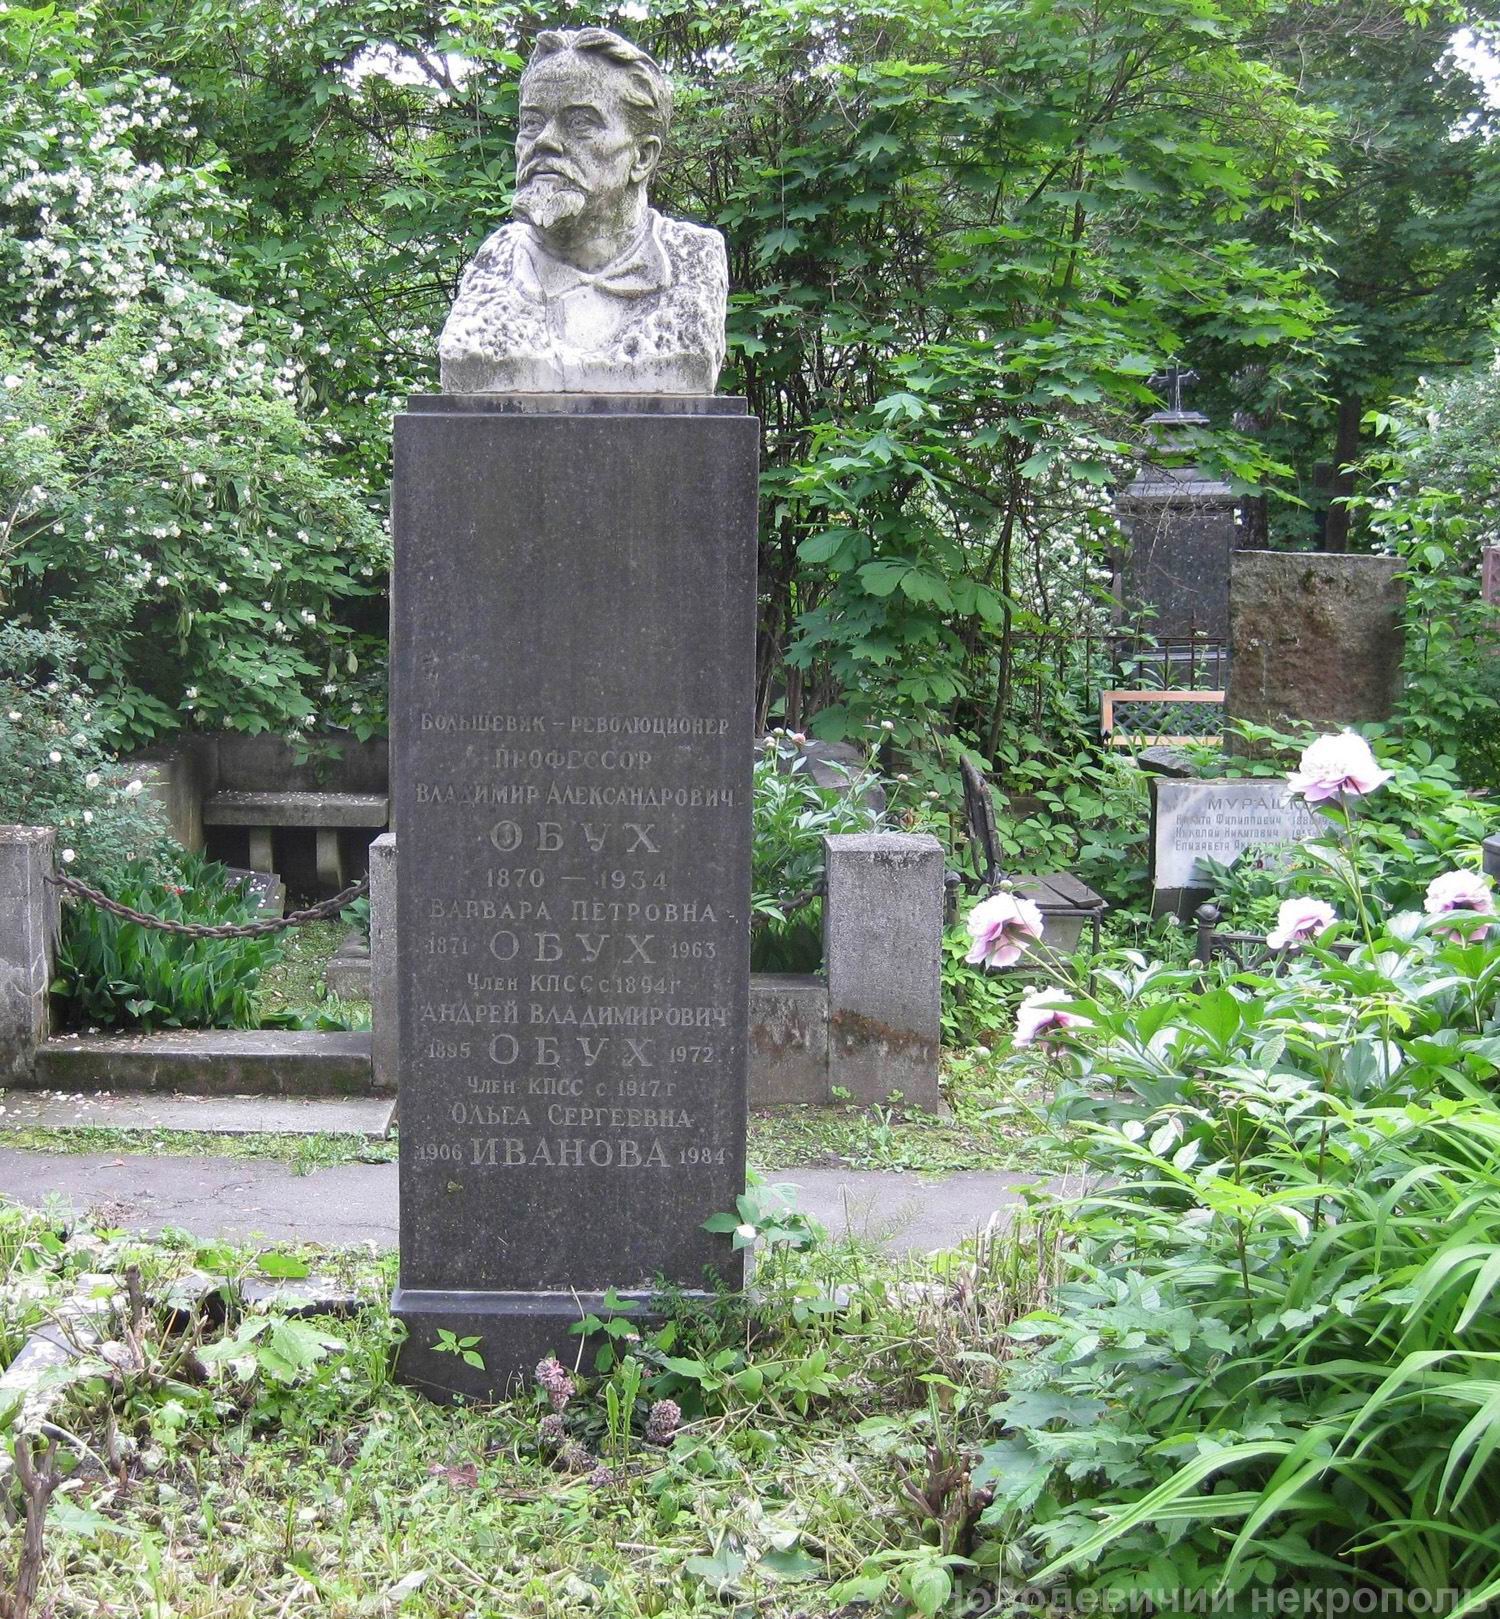 Памятник на могиле Обуха В.А. (1870-1934), ск. А.Елецкий, на Новодевичьем кладбище (3-62-23).